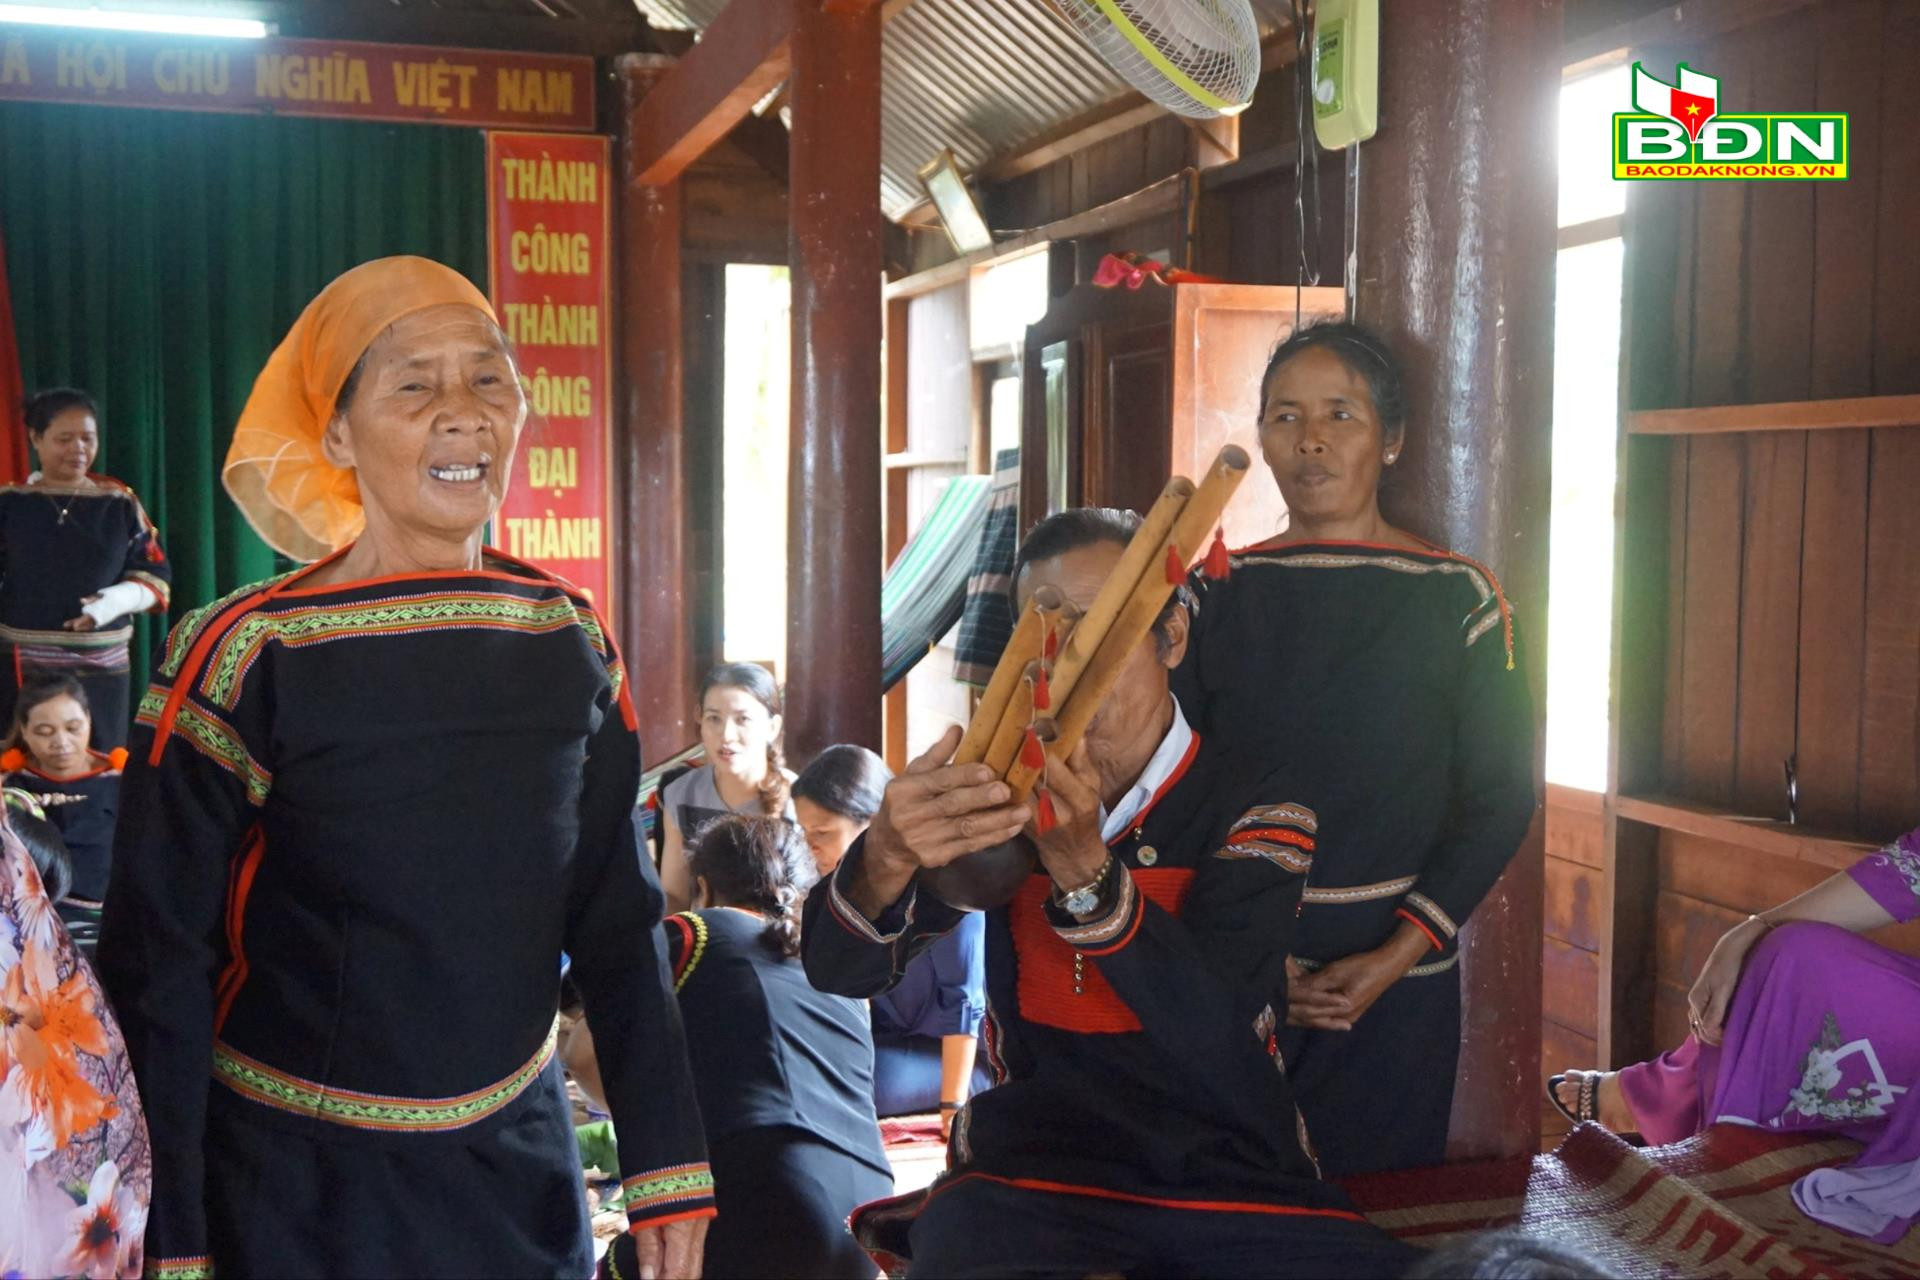 Sức sống văn hóa các dân tộc thiểu số tại chỗ ở Đắk Nông - Ảnh 6.